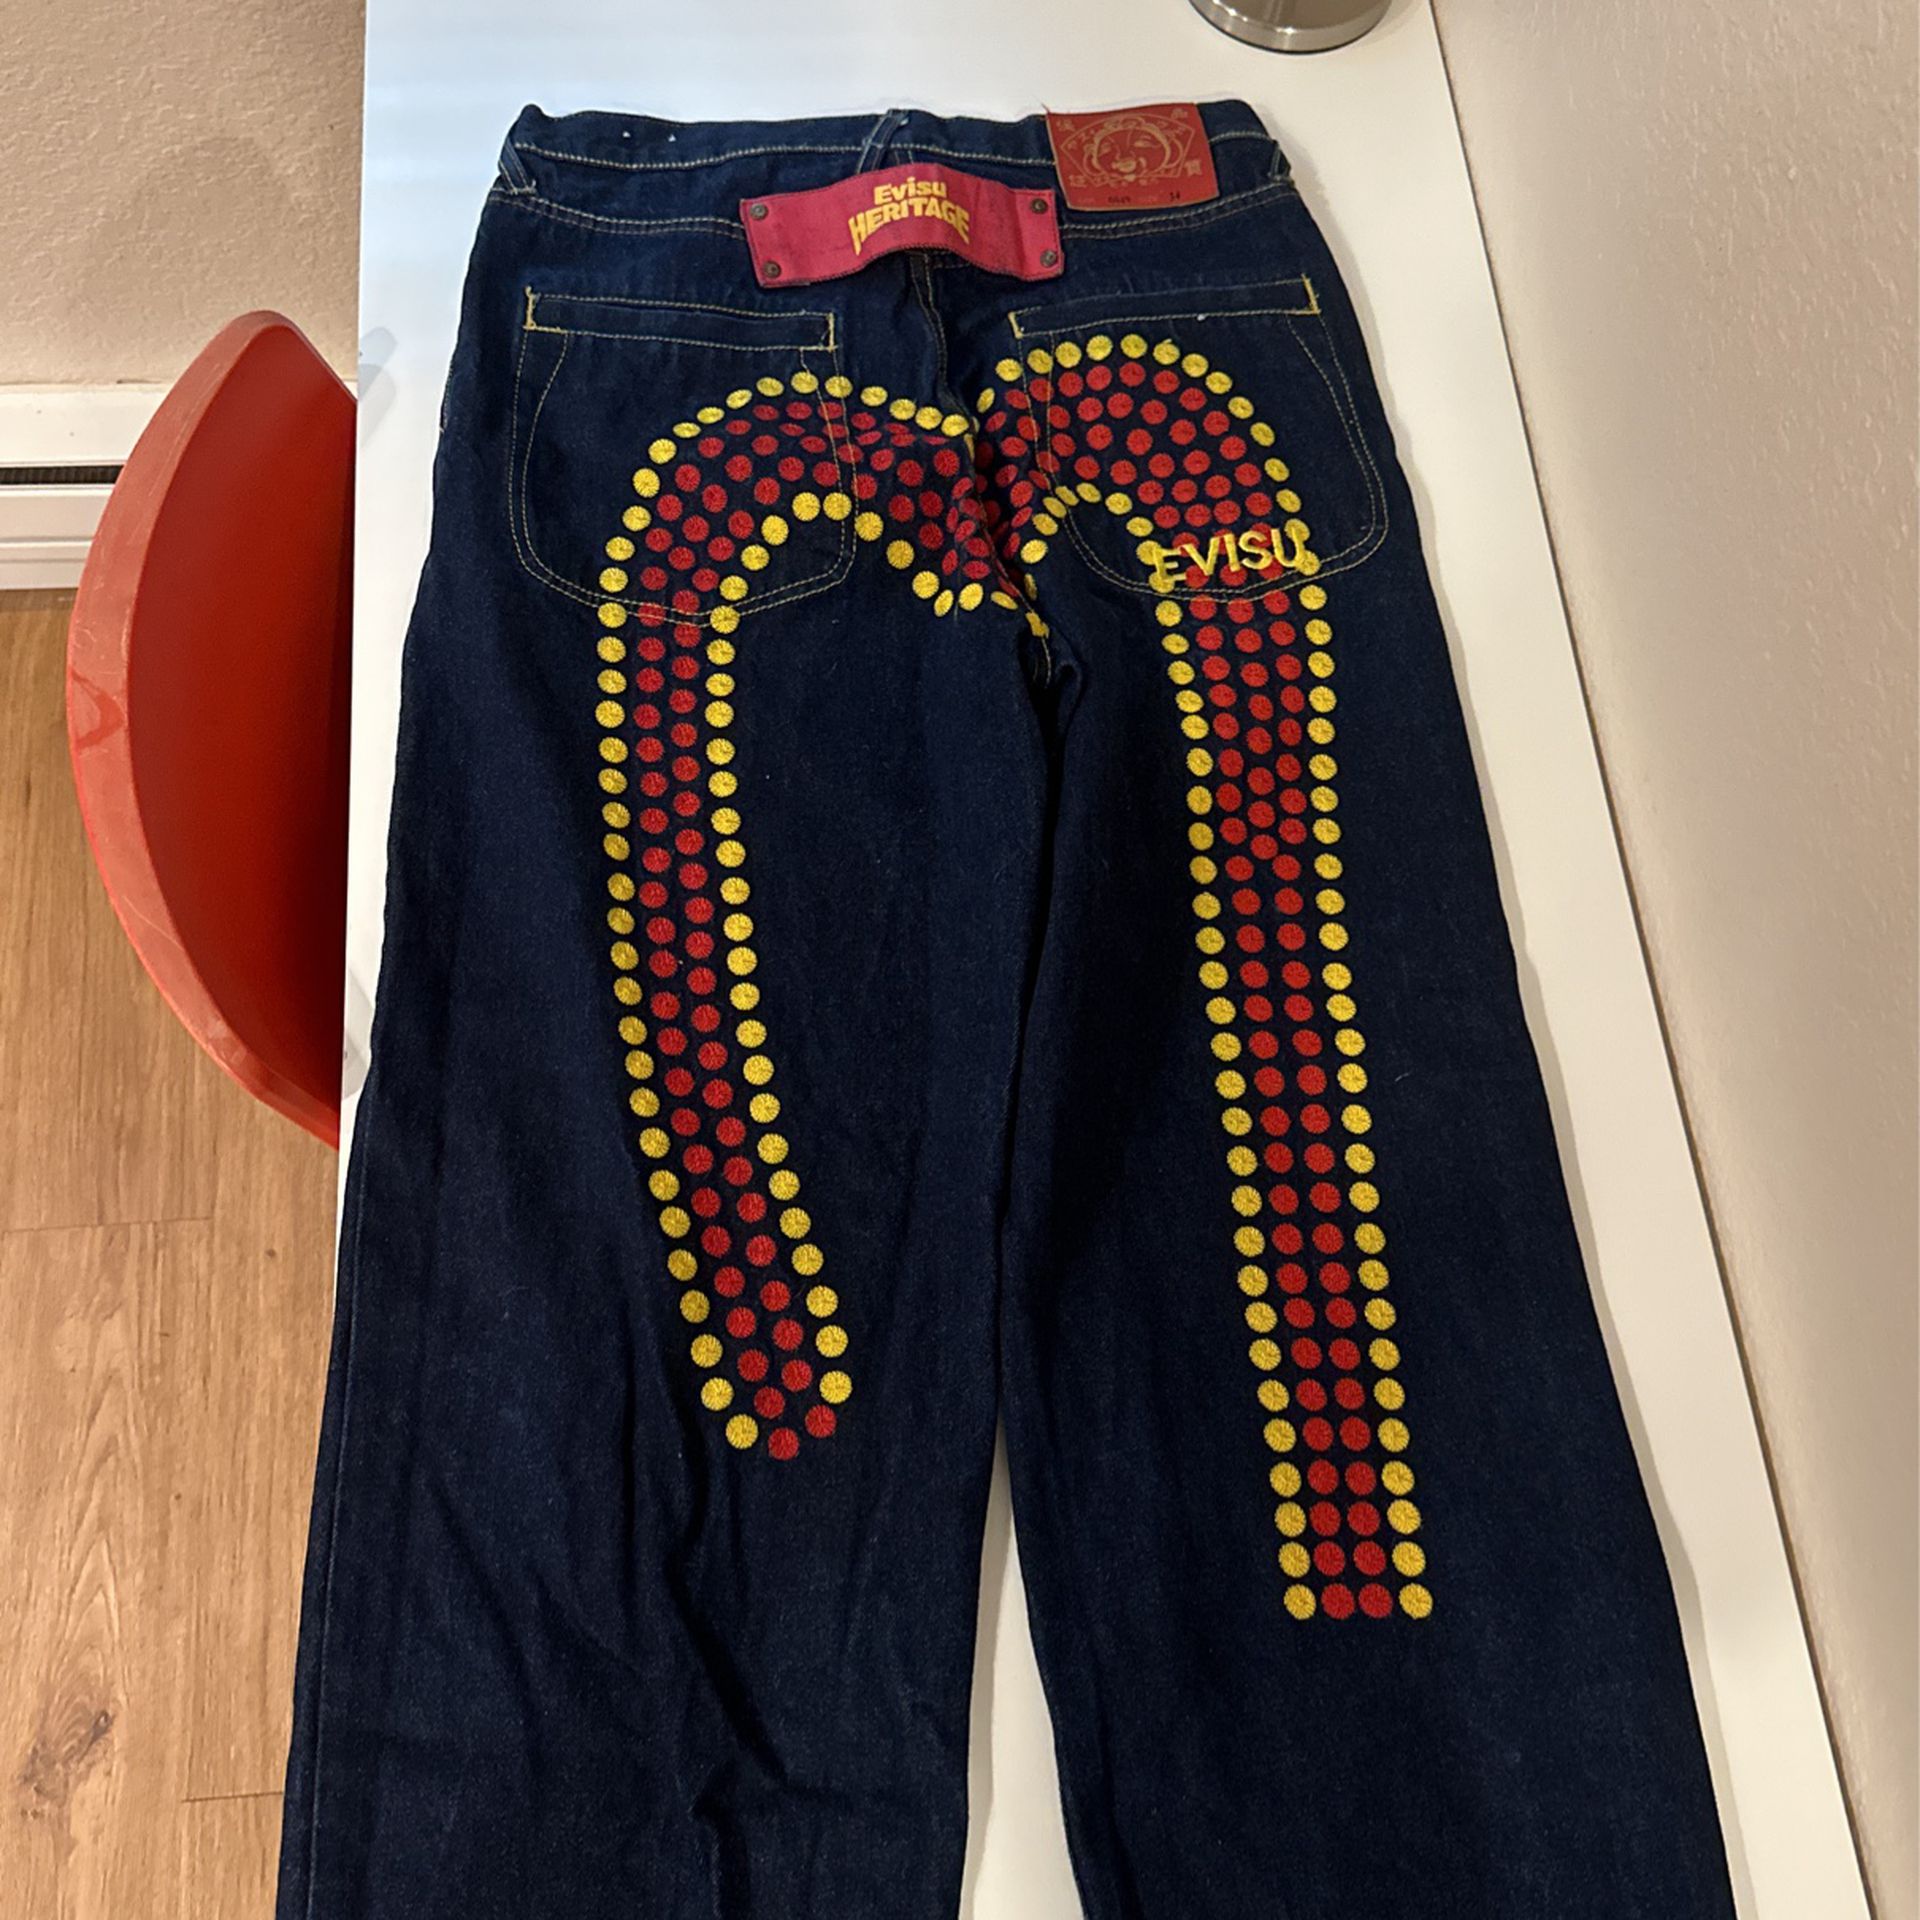 Evisu Jeans Size 34 Lot #0049 Rare 